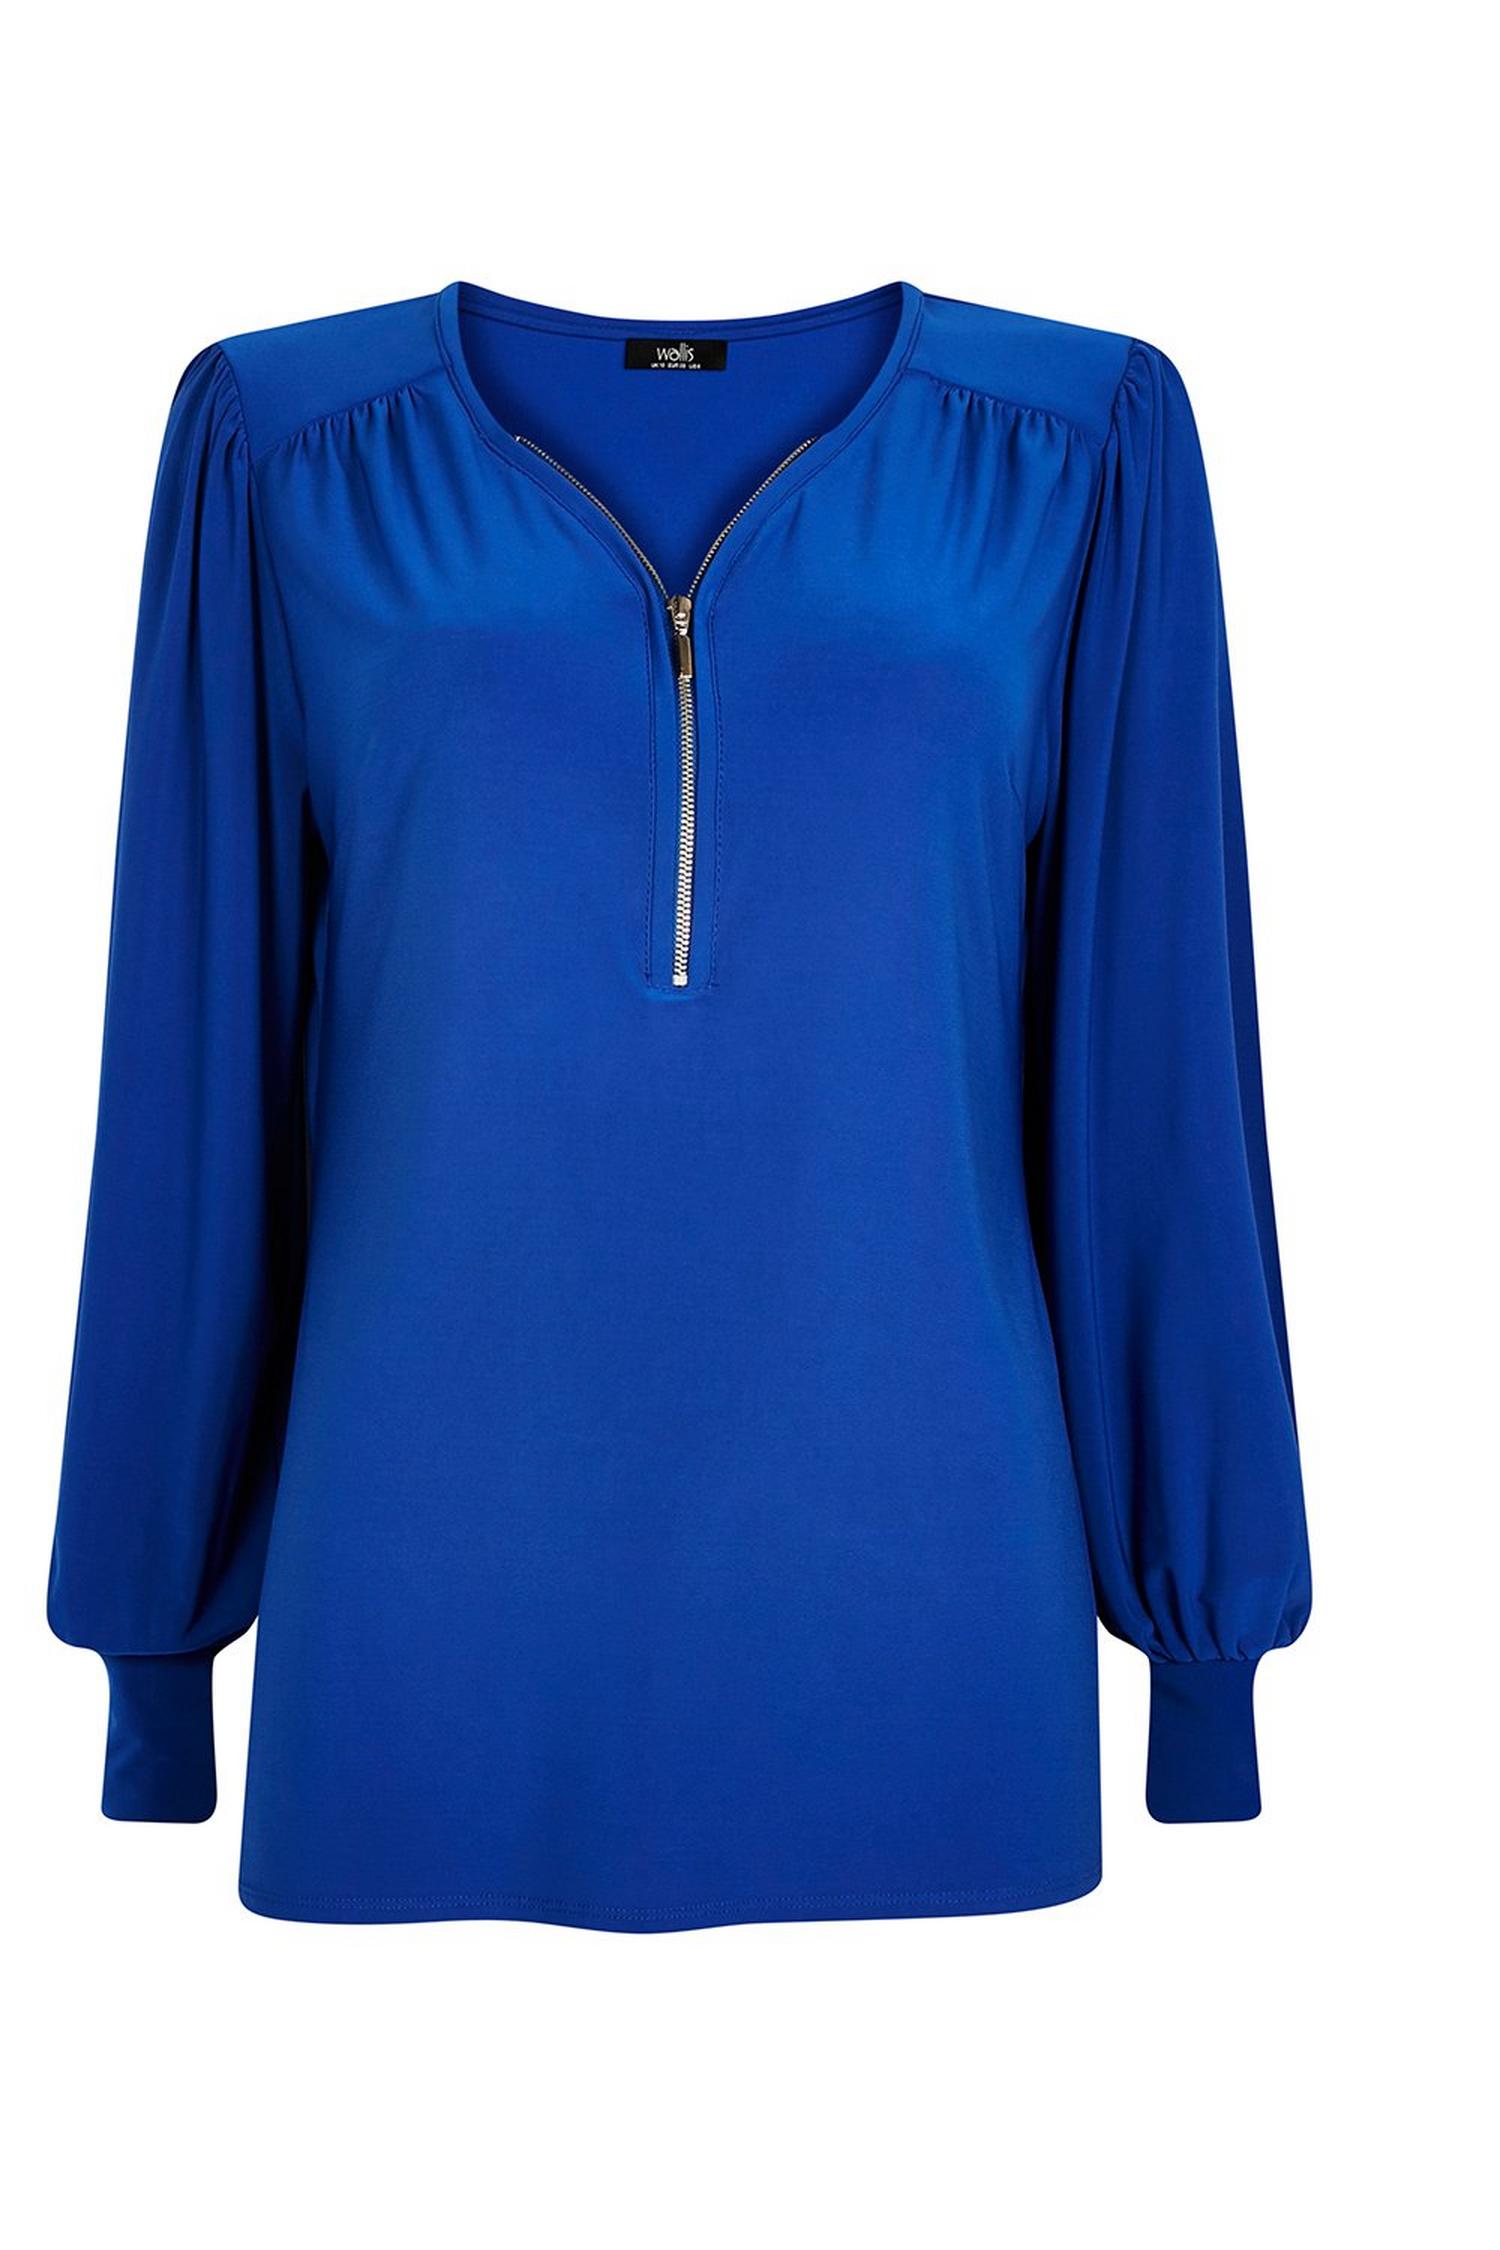 Cobalt Blue Zip Front Jersey Top | Wallis UK